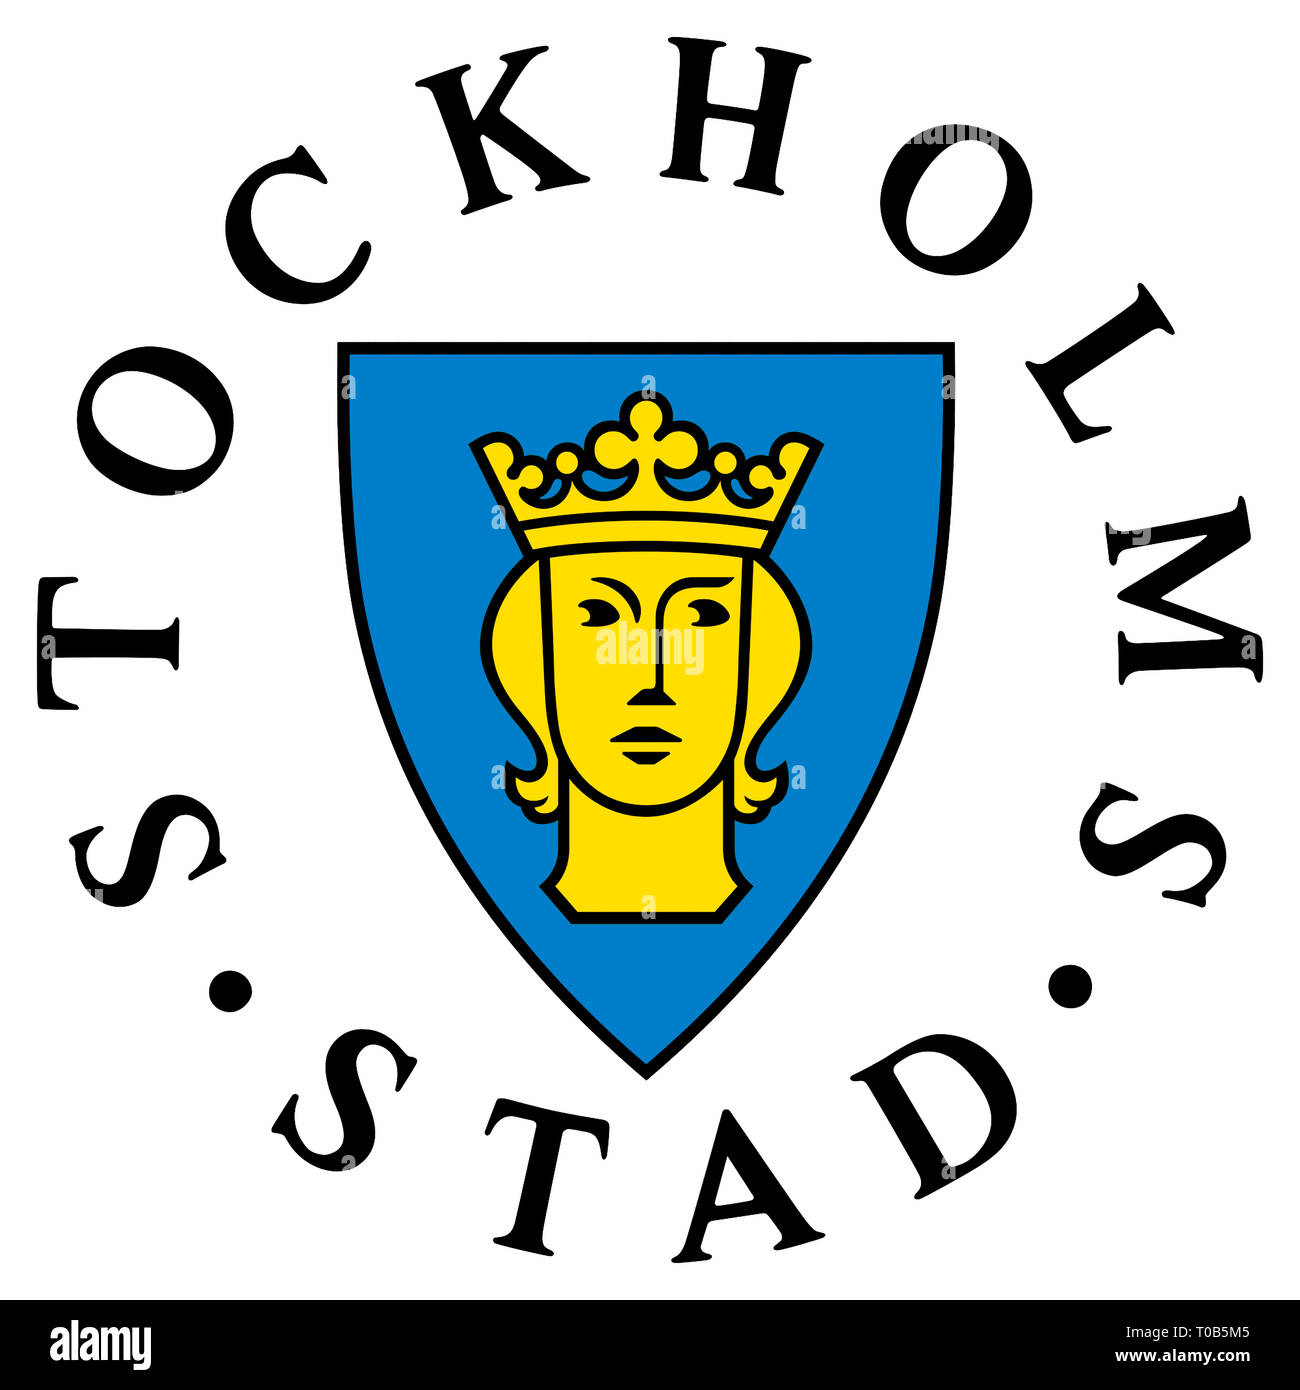 Wappen der schwedischen Hauptstadt Stockholm - Schweden. Stockfoto